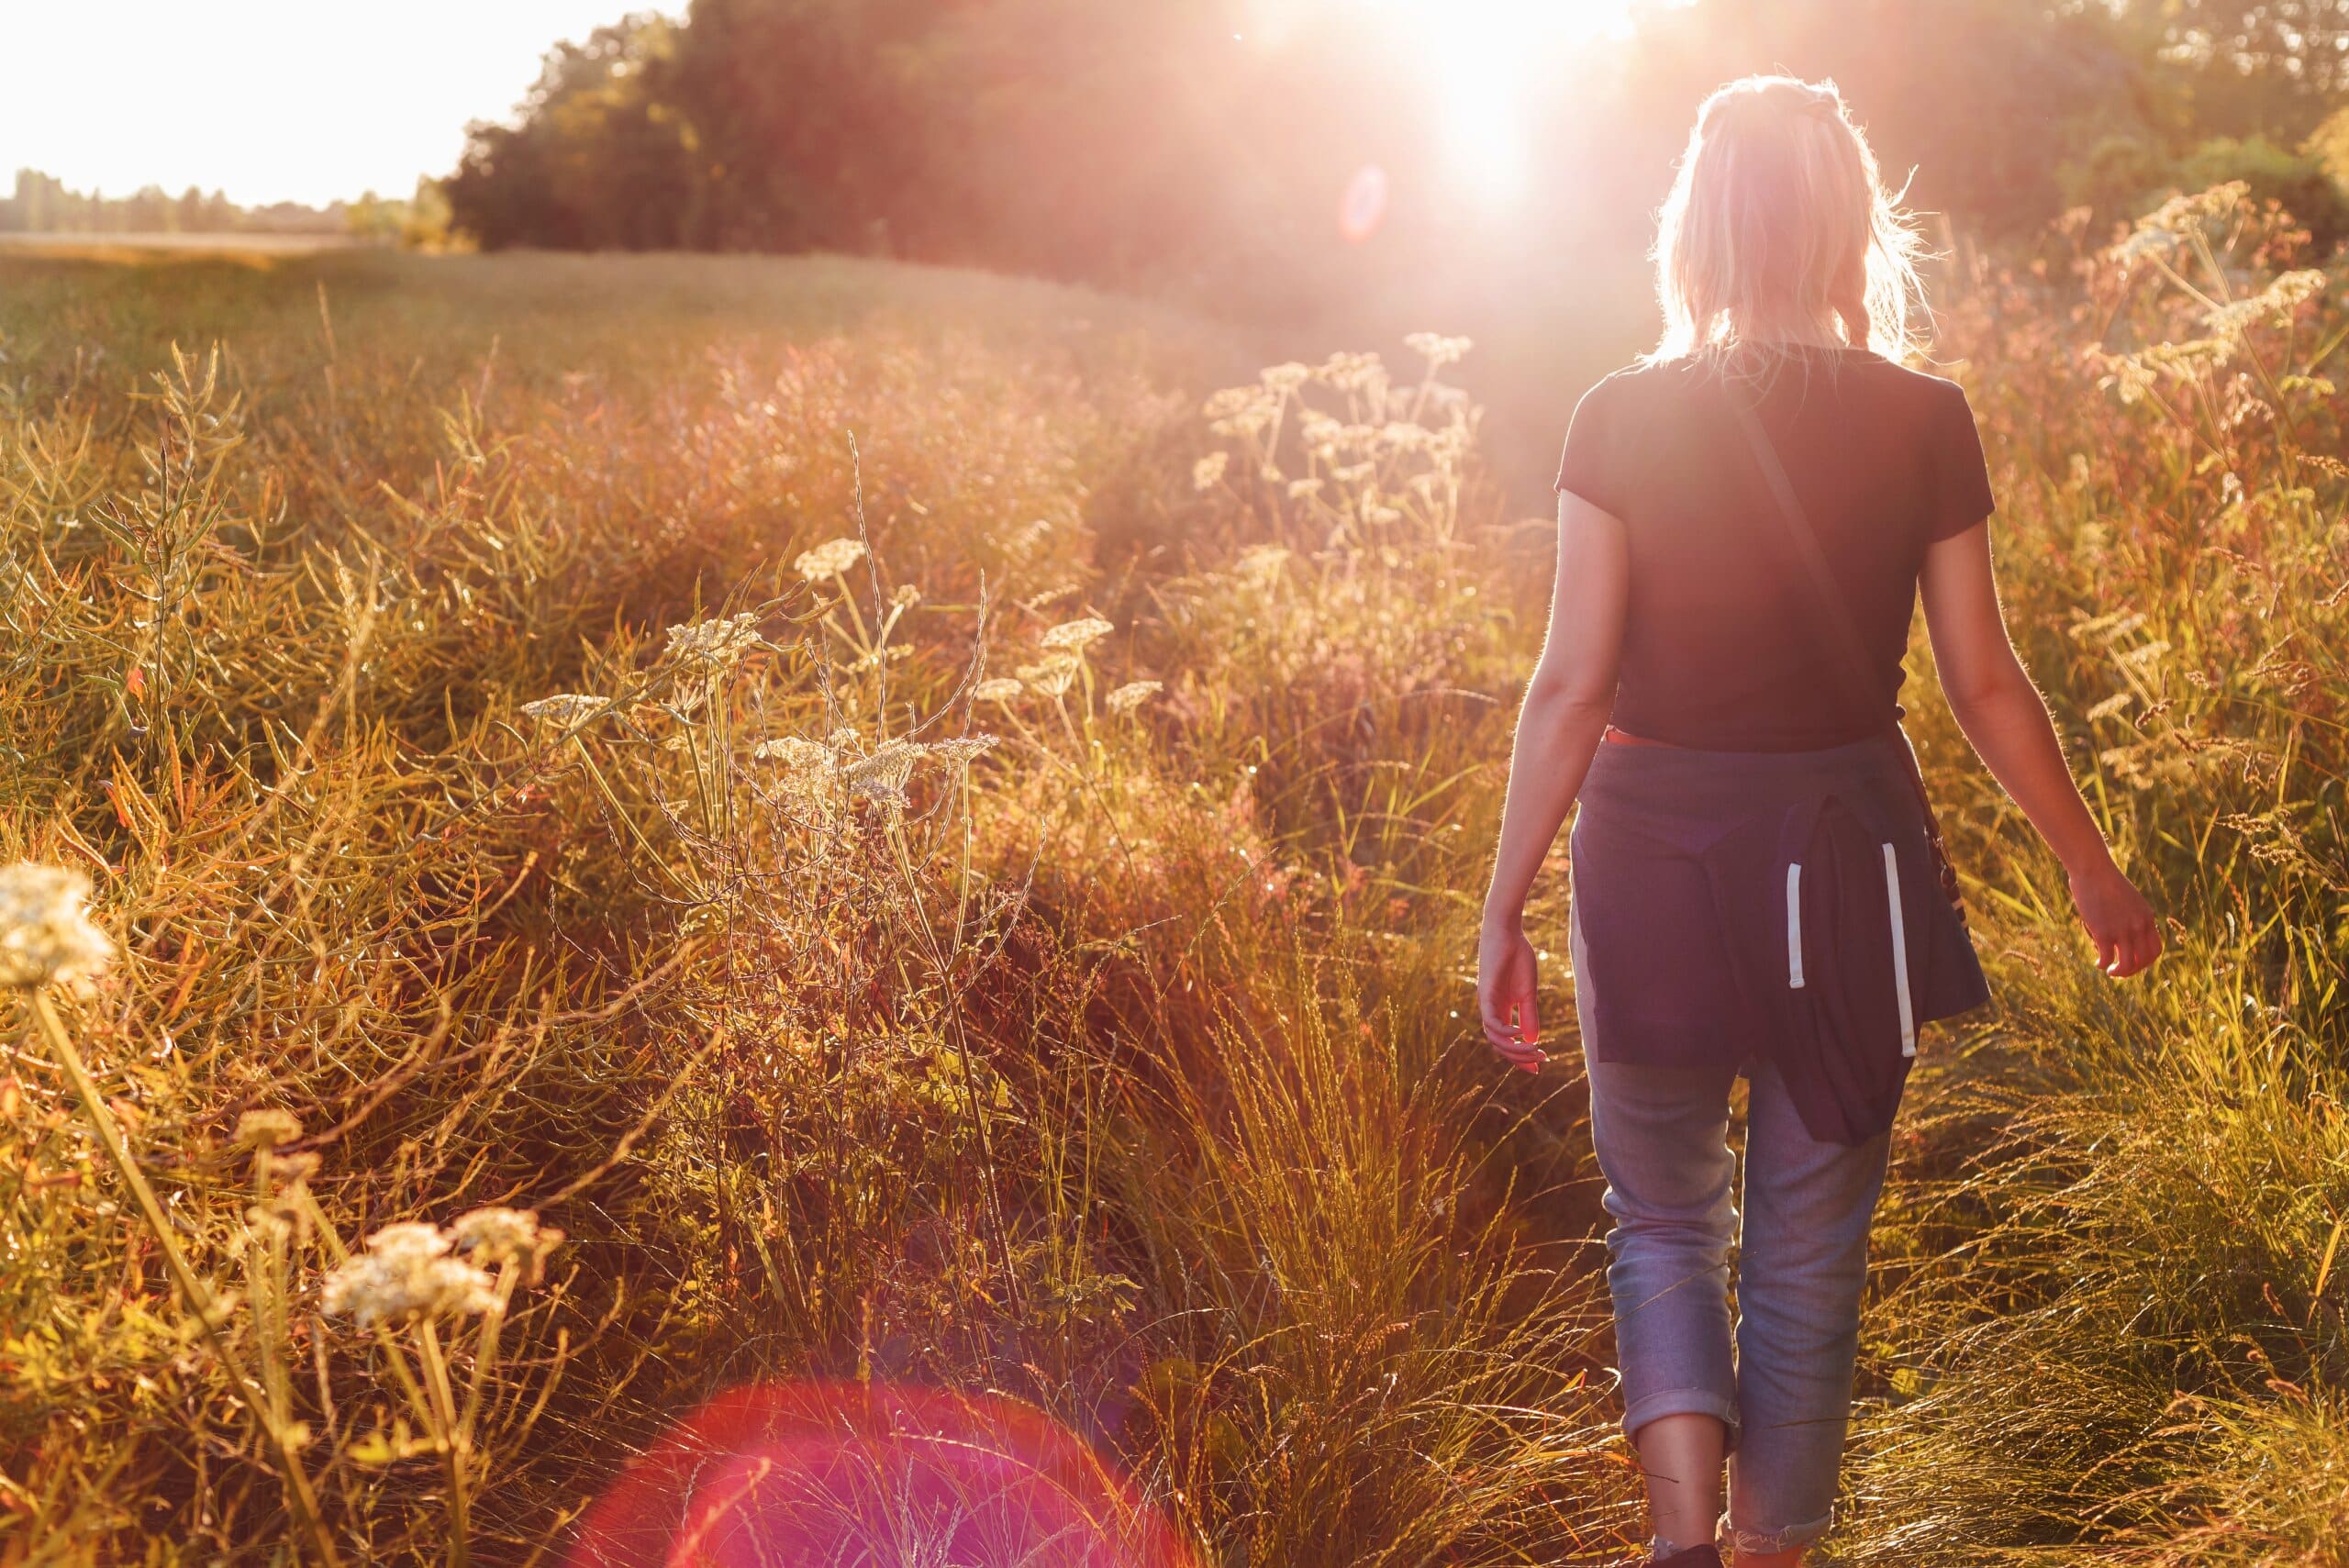 Woman walking through a field with sun shining.